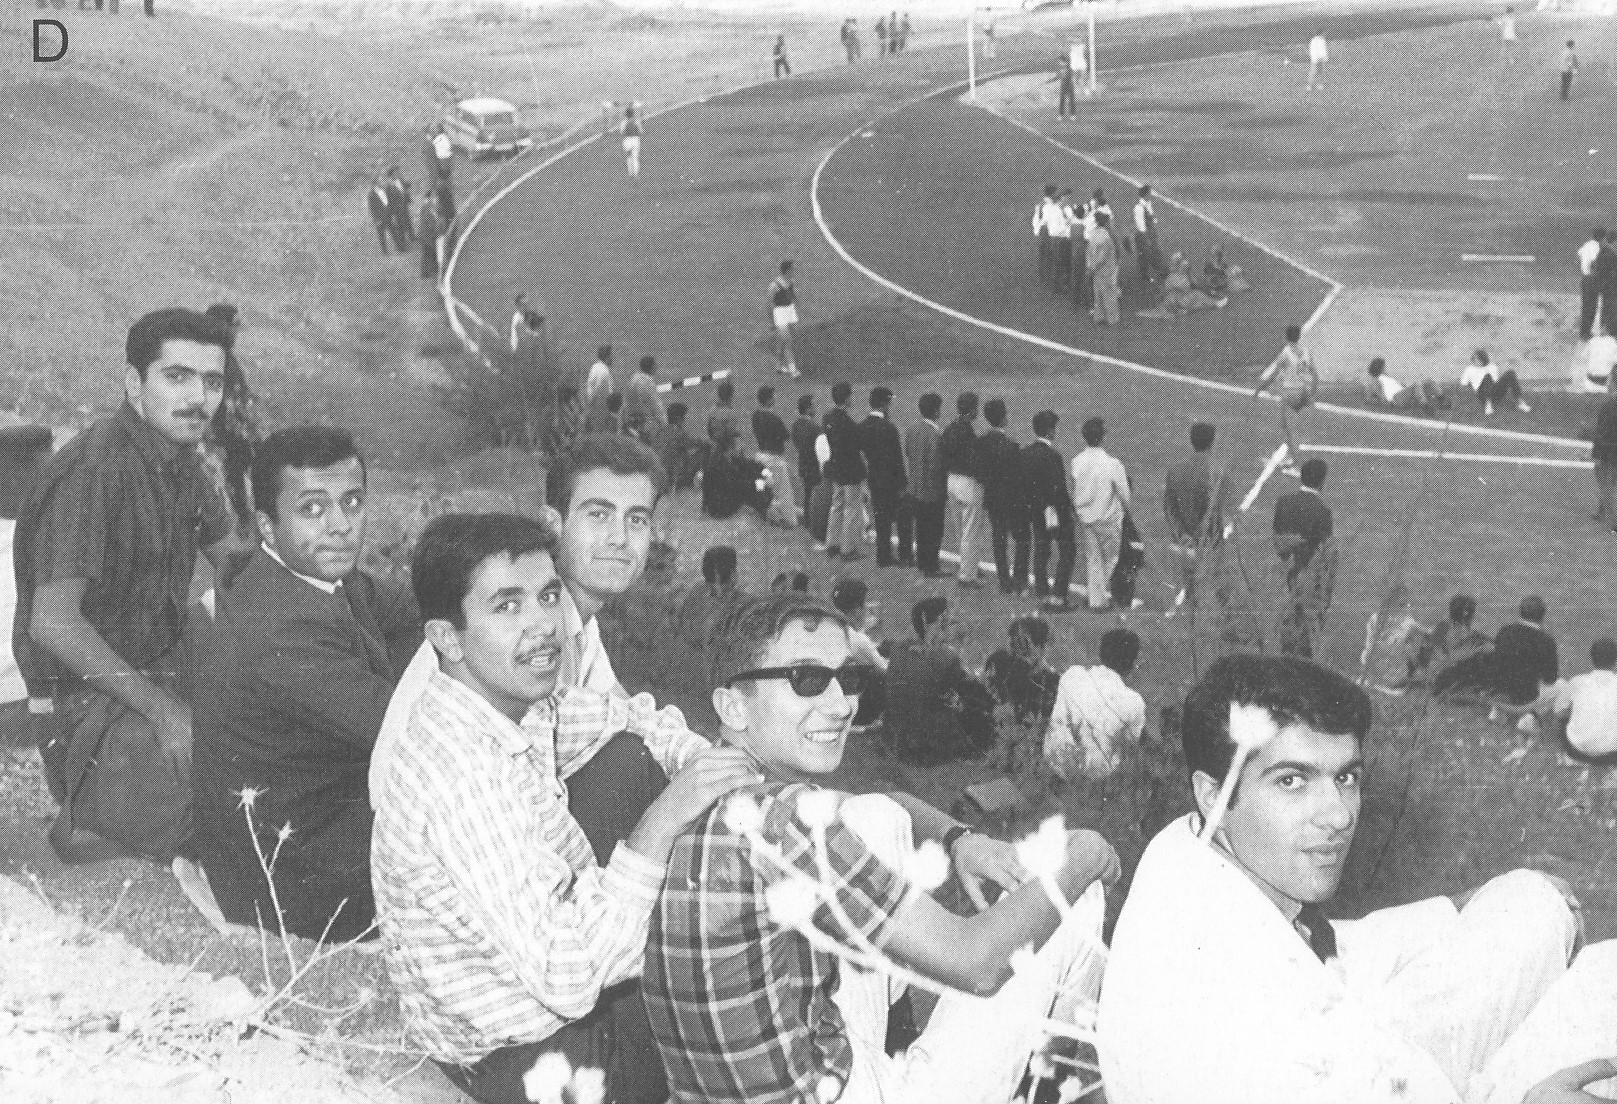 September 30, 1965, METU stadium opening day